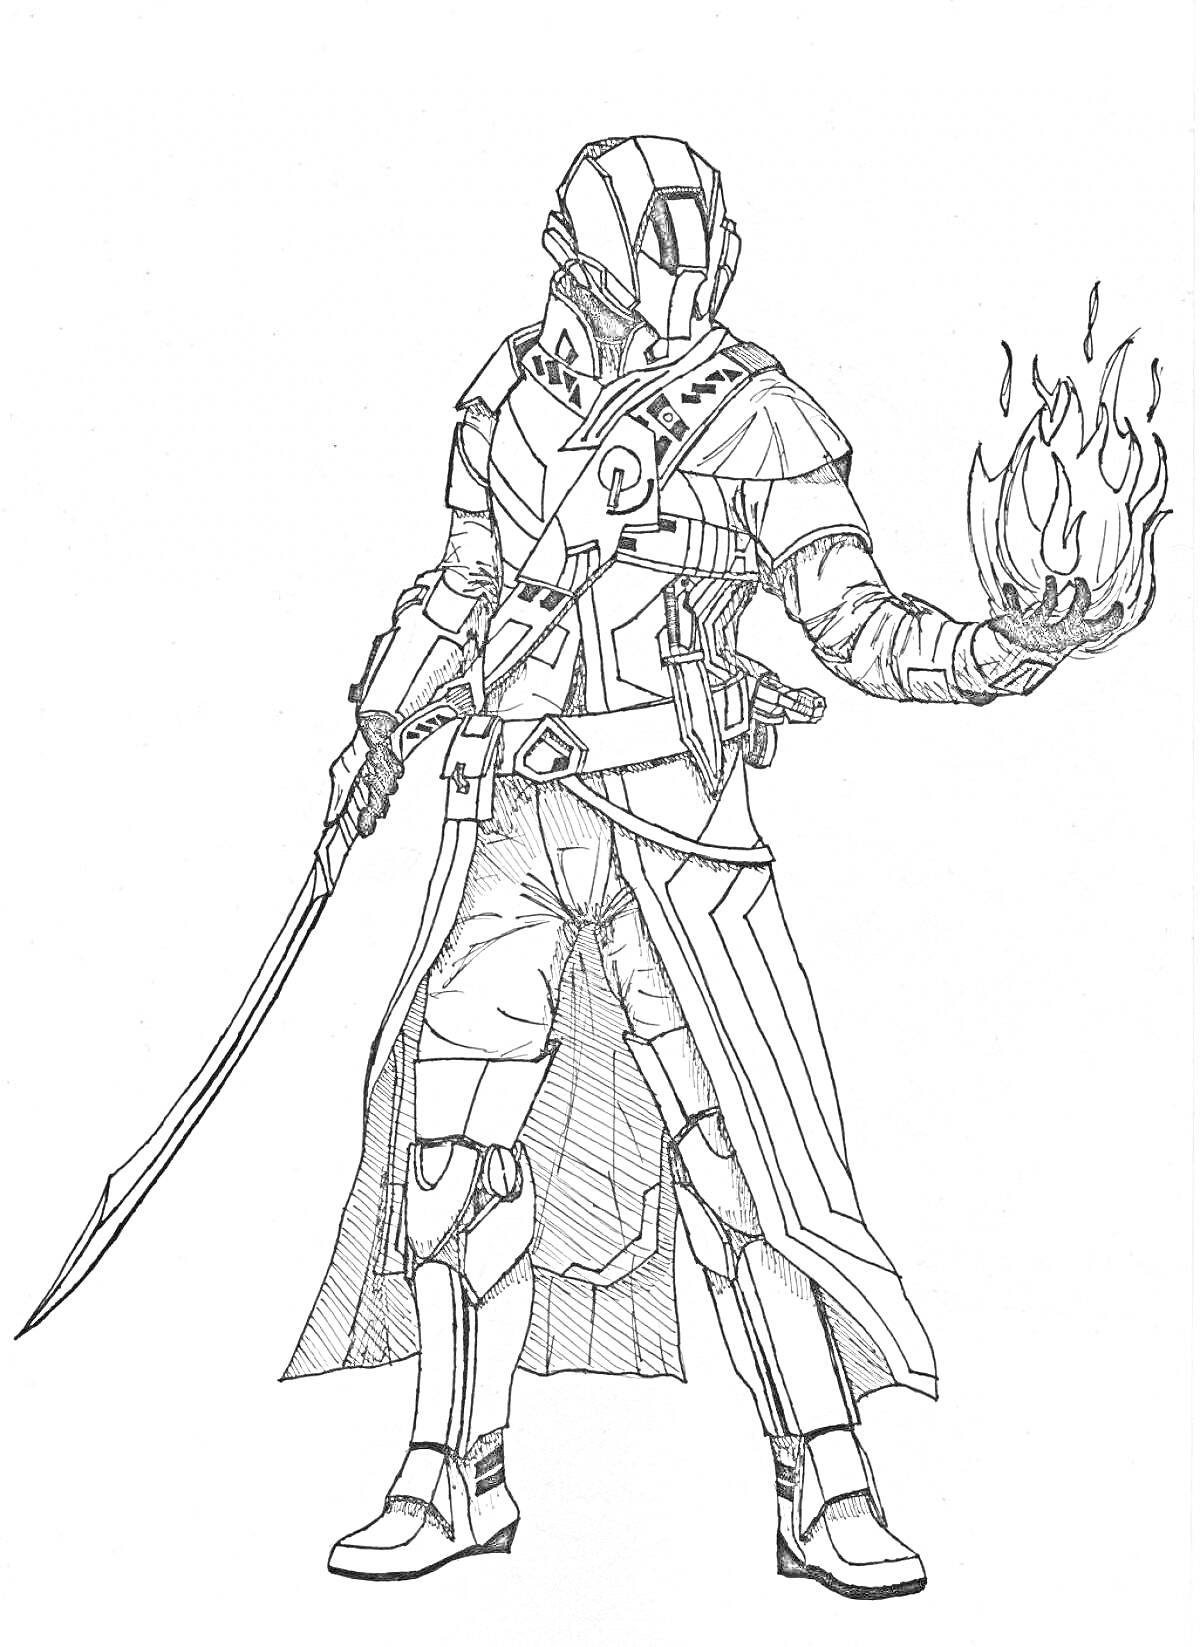 РаскраскаВоин в броне с мечом и огненным шаром